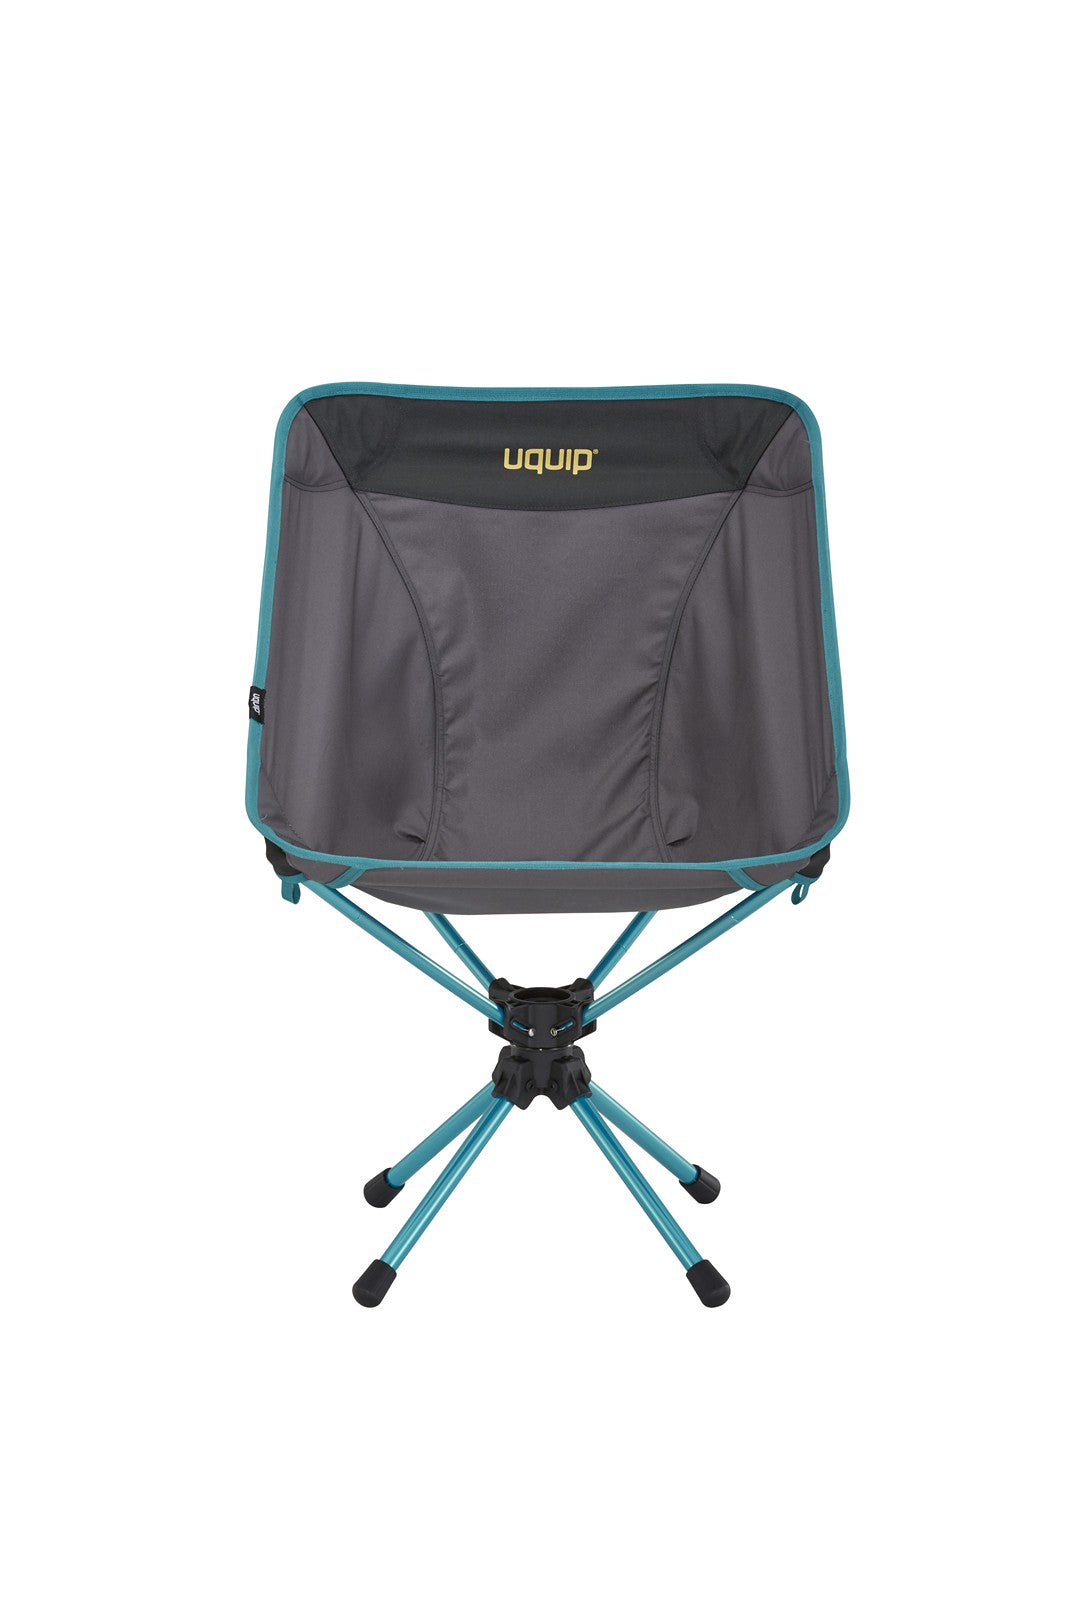 Lätt och stark campingstol från Uquip i färgen grått med snurrfunktion